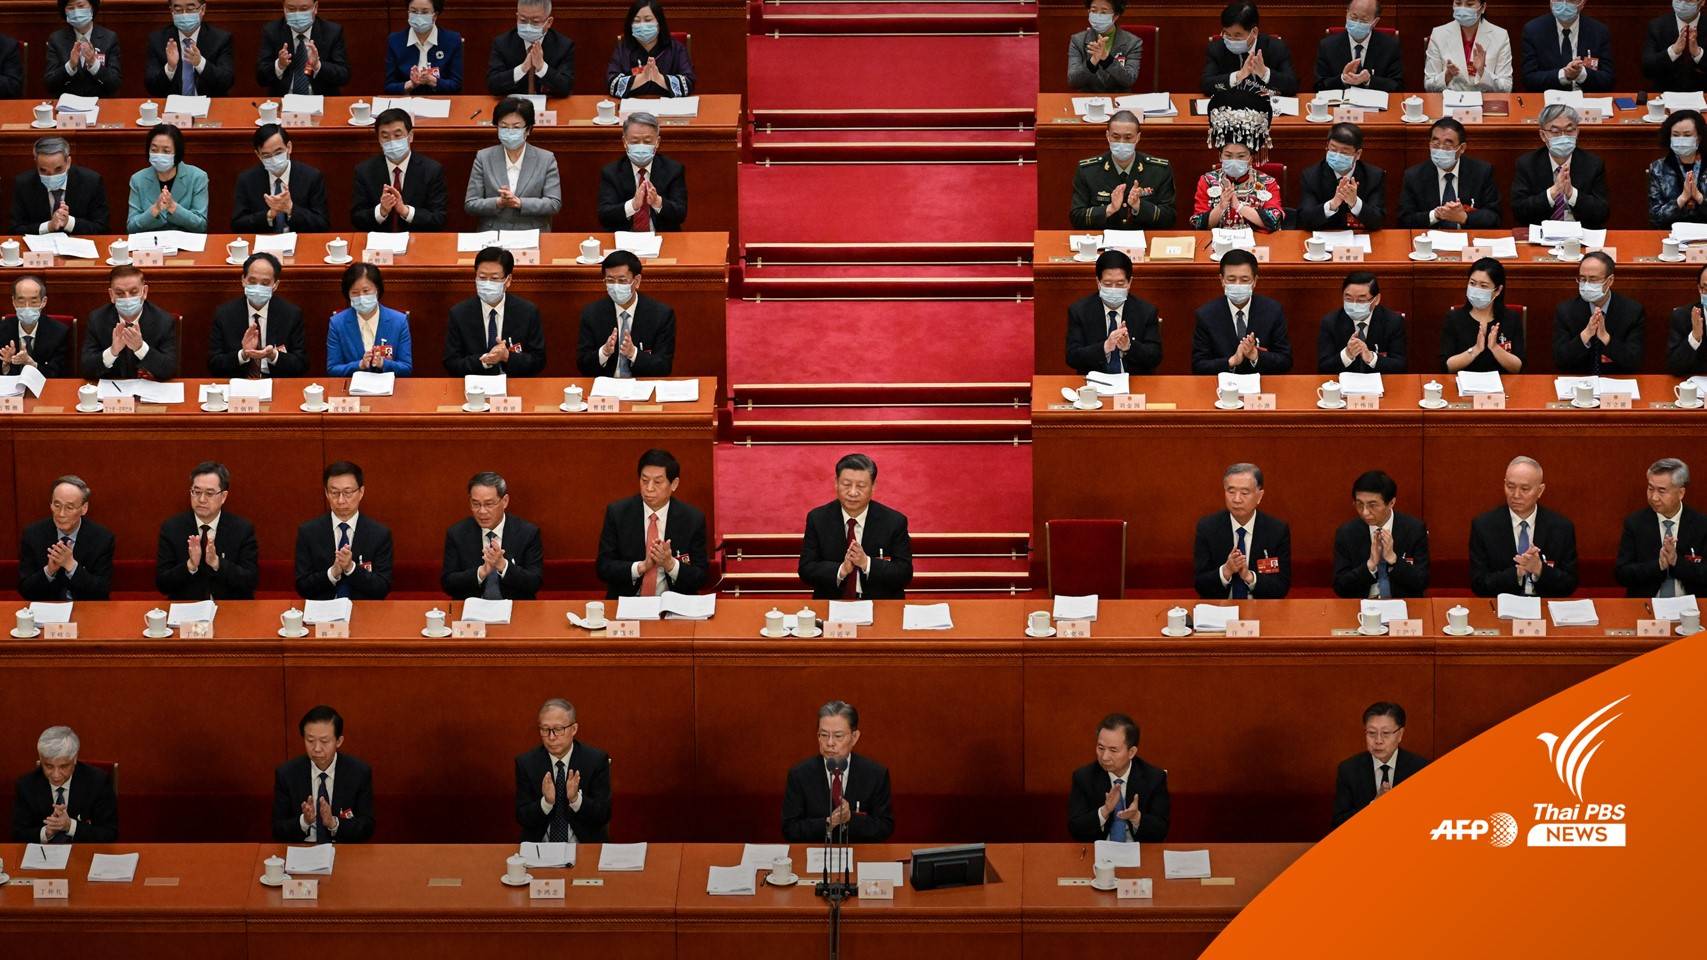 จีนประชุม 2 สภาตั้งเป้าปฏิรูปกระชับอำนาจ "สี จิ้นผิง"